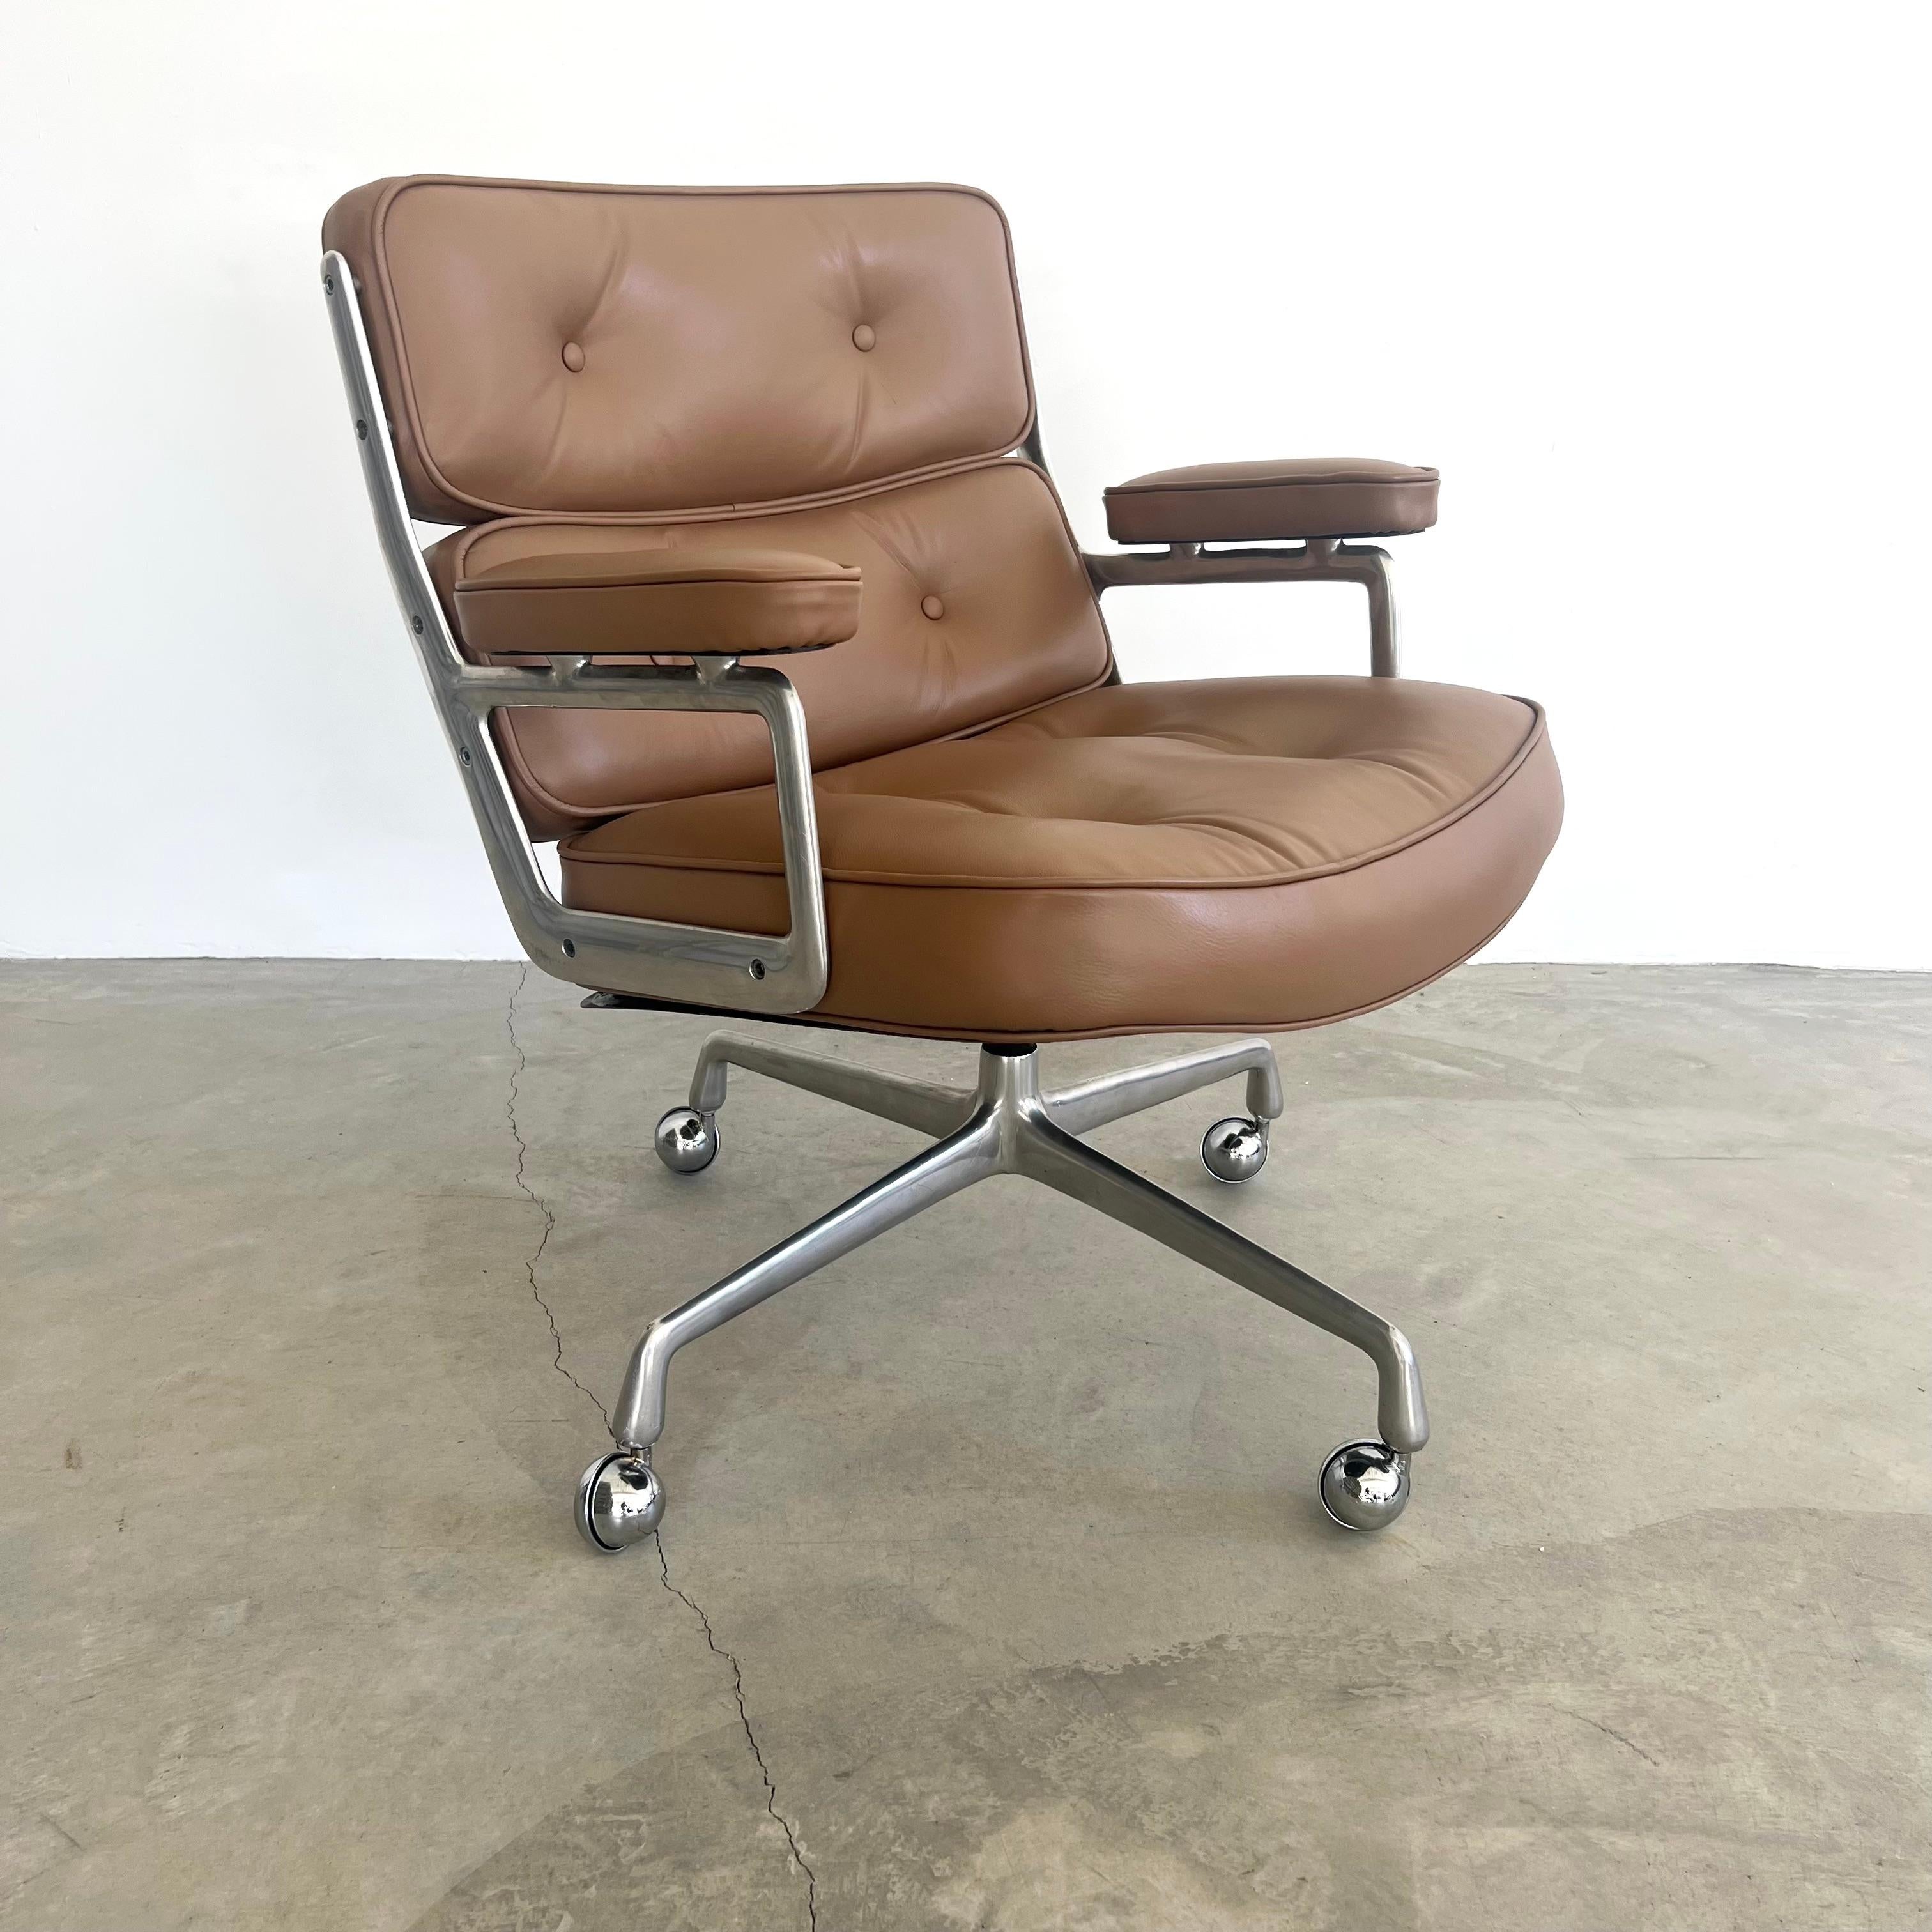 Chaises classiques Eames Time Life Lobby Chairs en cuir fauve pour Herman Miller estampillées. Le cuir a été récemment nettoyé et coloré et présente un aspect magnifique. Extrêmement confortable et usé. La chaise pivote. Le fauteuil ne s'incline